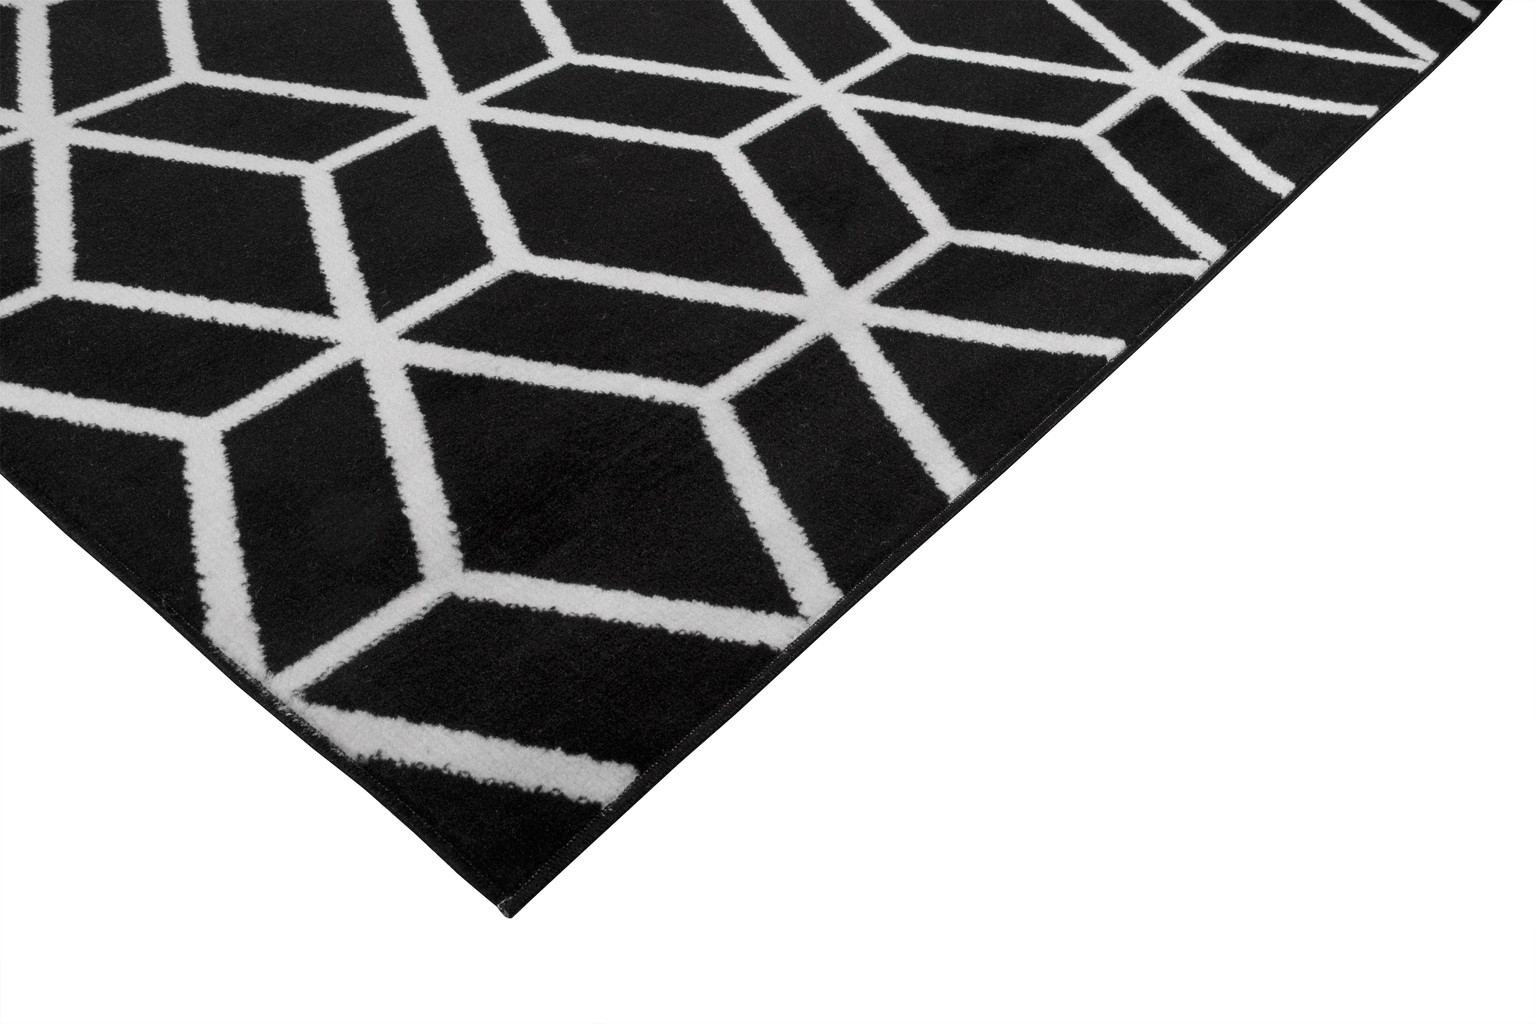 Geometryczny czarny dywan Almas 13 w białą linię, siatkę, romby nowoczesny styl - Carpetforyou zdjęcie 3